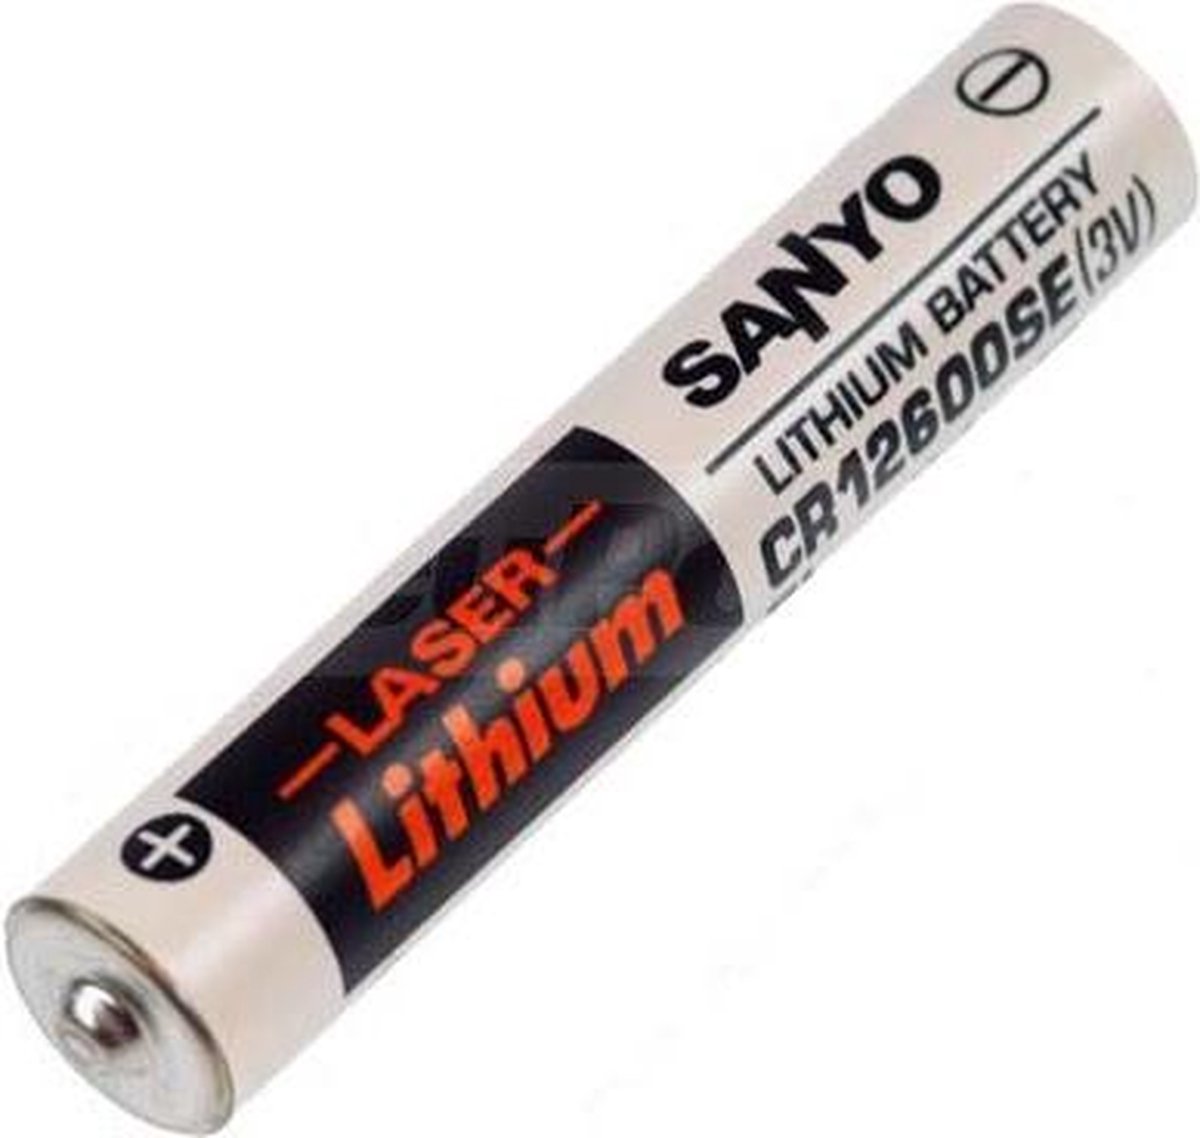 1 Stuk - FDK Sanyo CR12600SE Lithium Batterij 3,0V 1500Mah